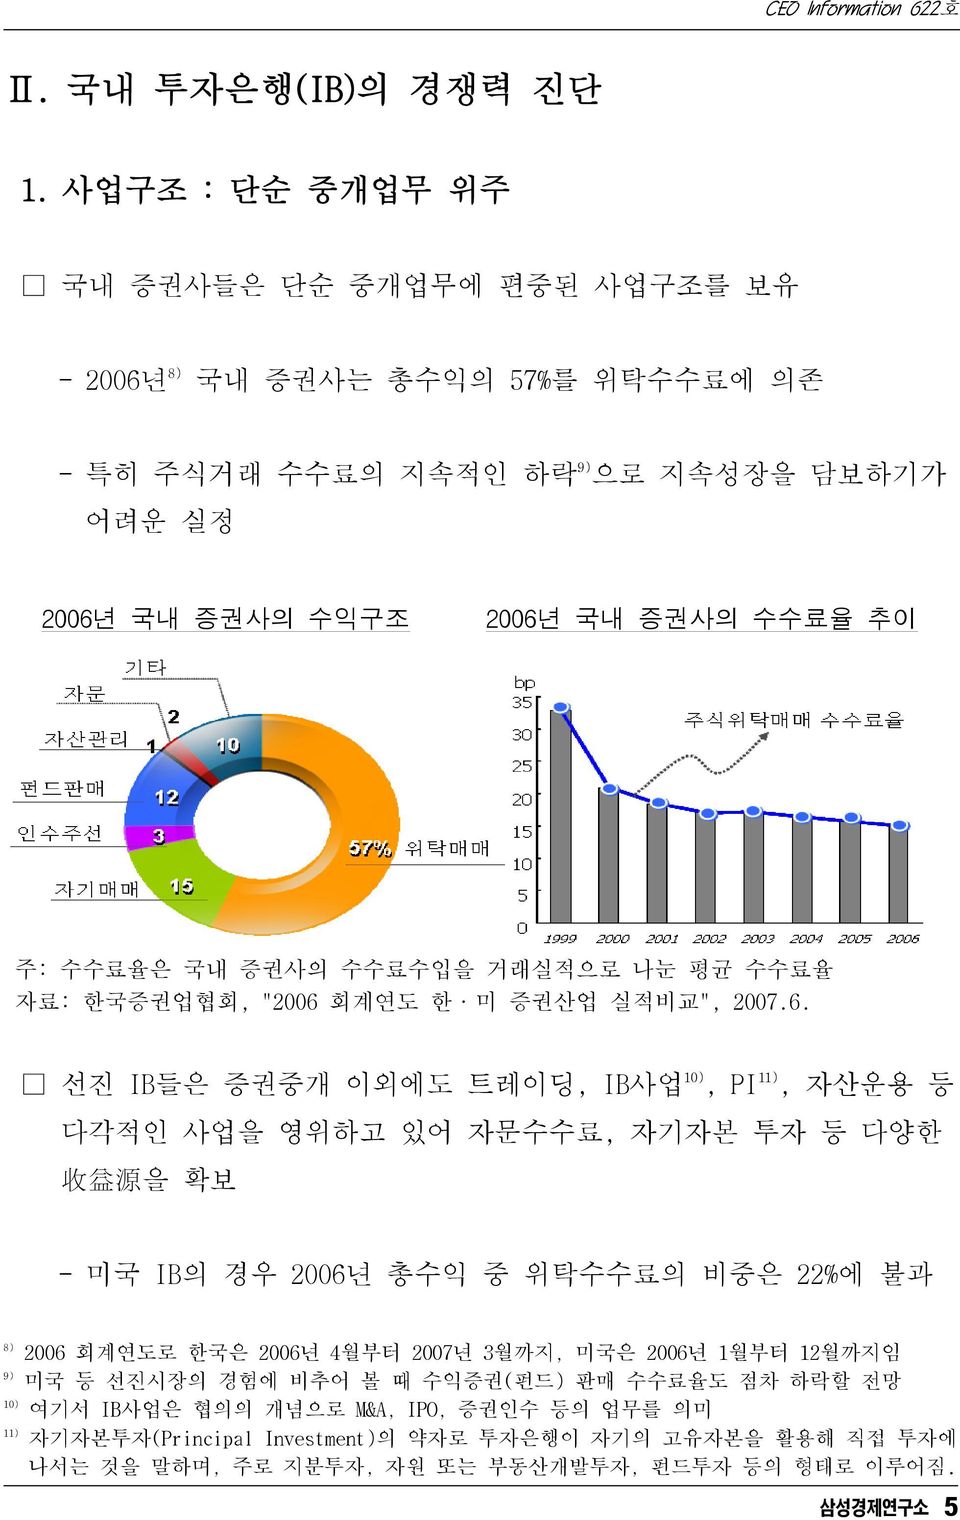 주: 수수료율은 국내 증권사의 수수료수입을 거래실적으로 나눈 평균 수수료율 자료: 한국증권업협회, "2006 